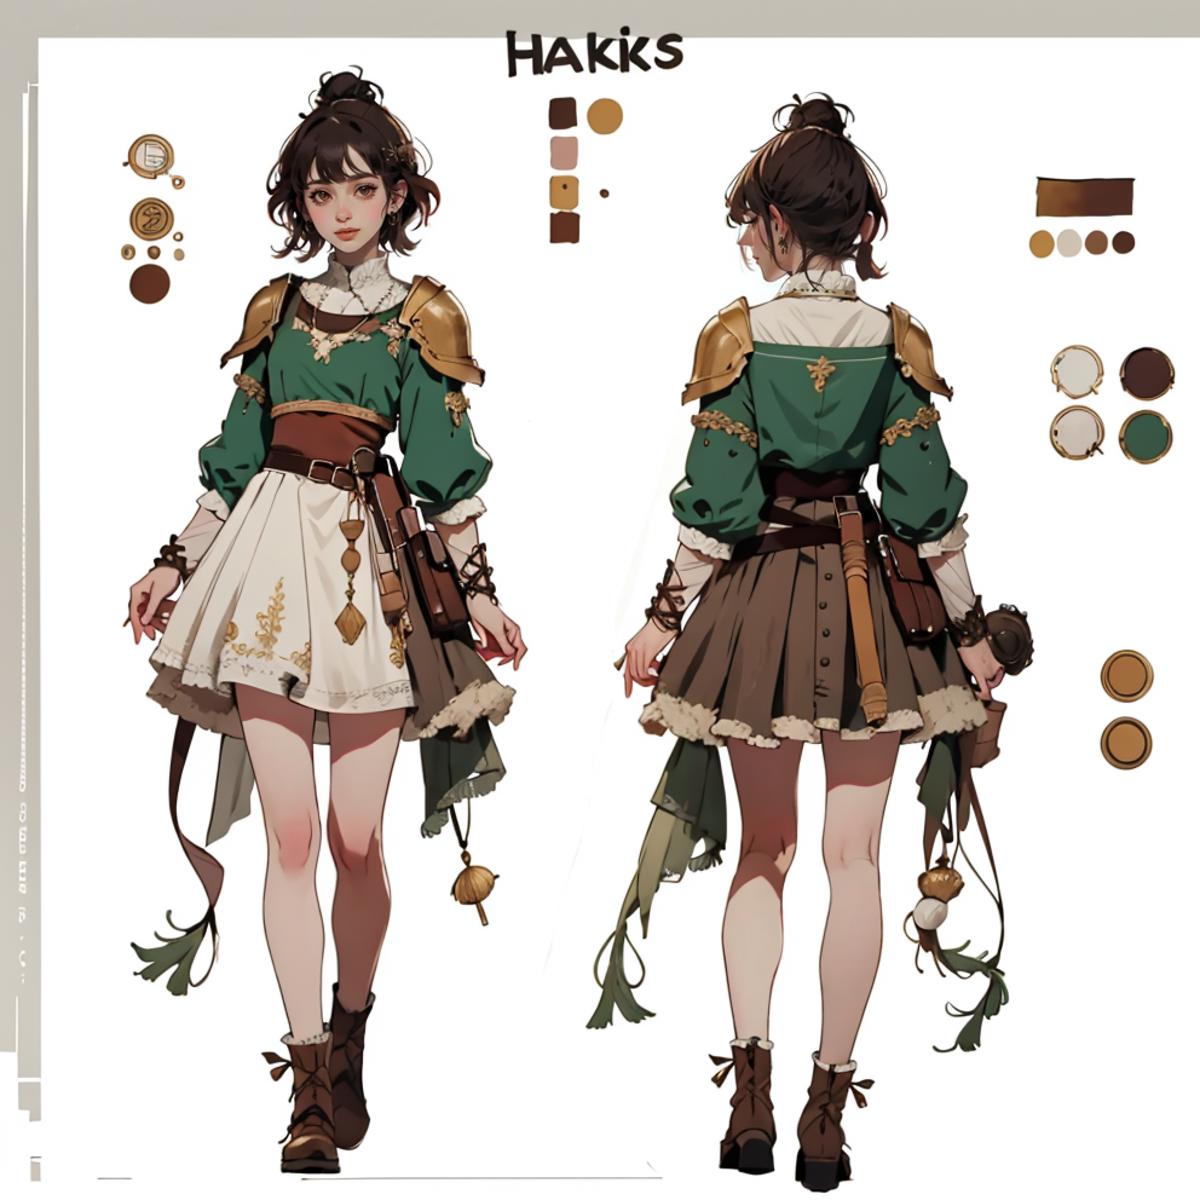 Haesicks - Tiktok image by SpookyGroove